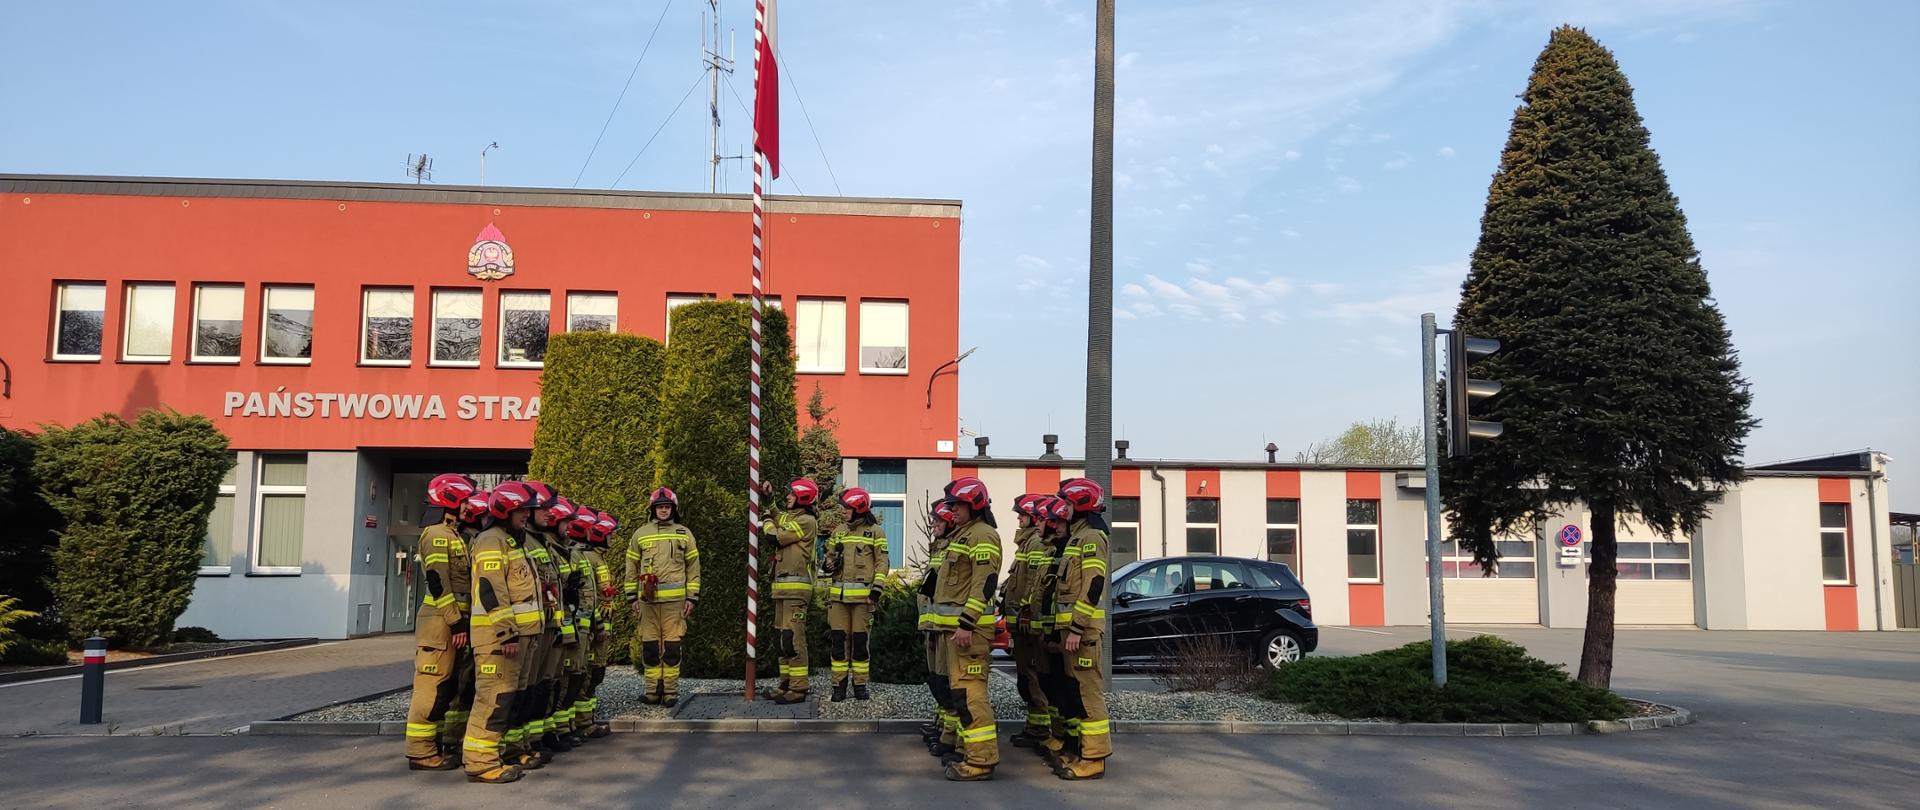 Zdjęcie przedstawia strażaków wieszających flagę państwową na tle komendy